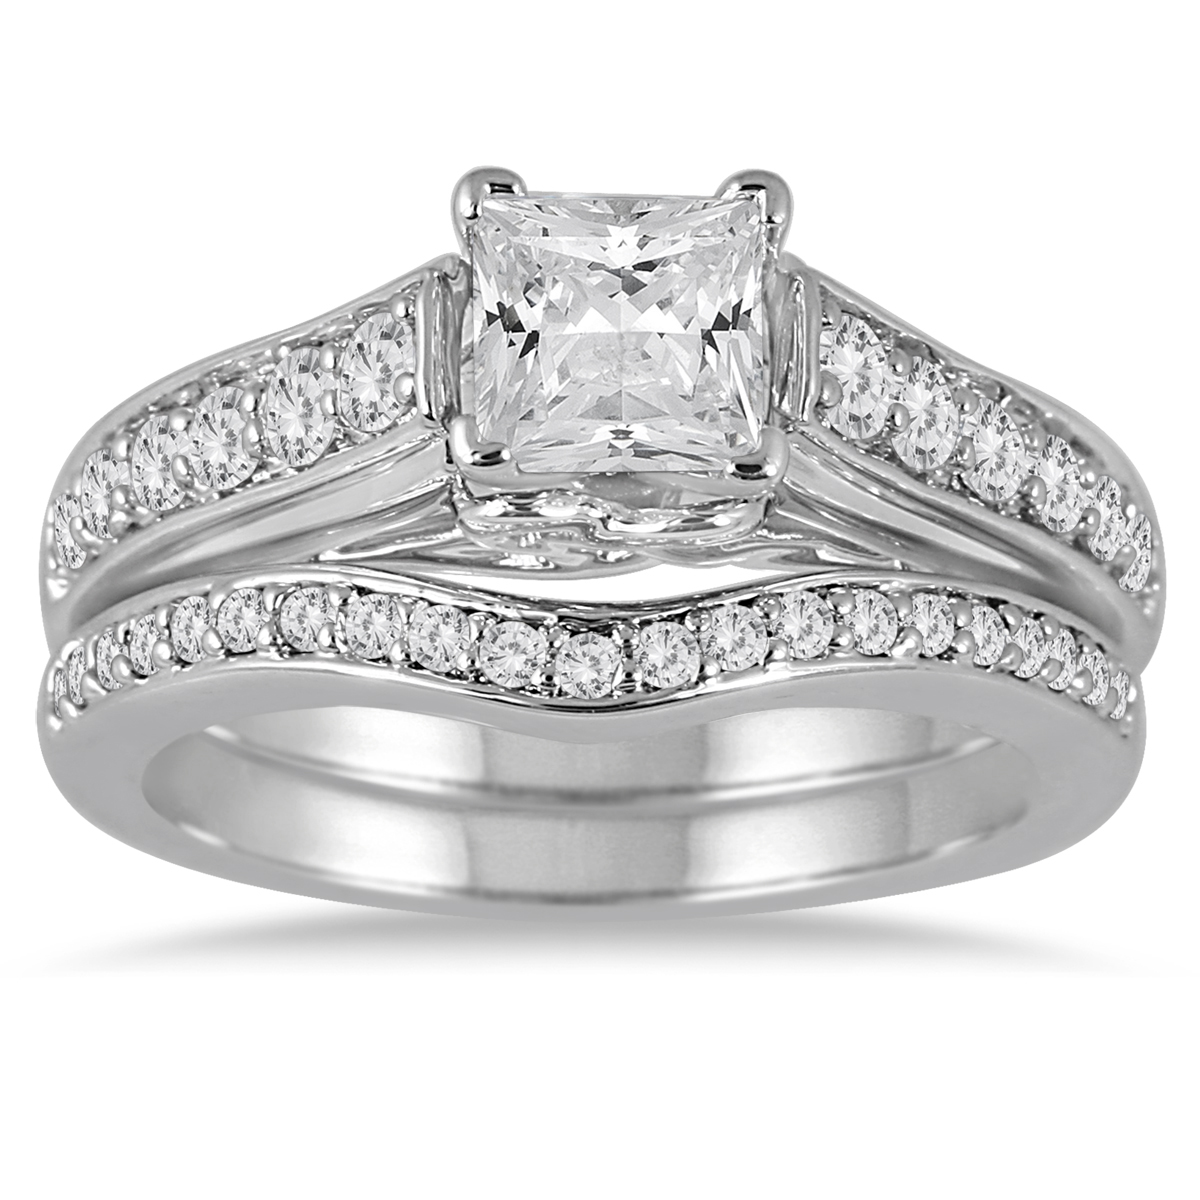 Image of 1 1/2 Carat TW Princess Diamond Bridal Set in 14K White Gold